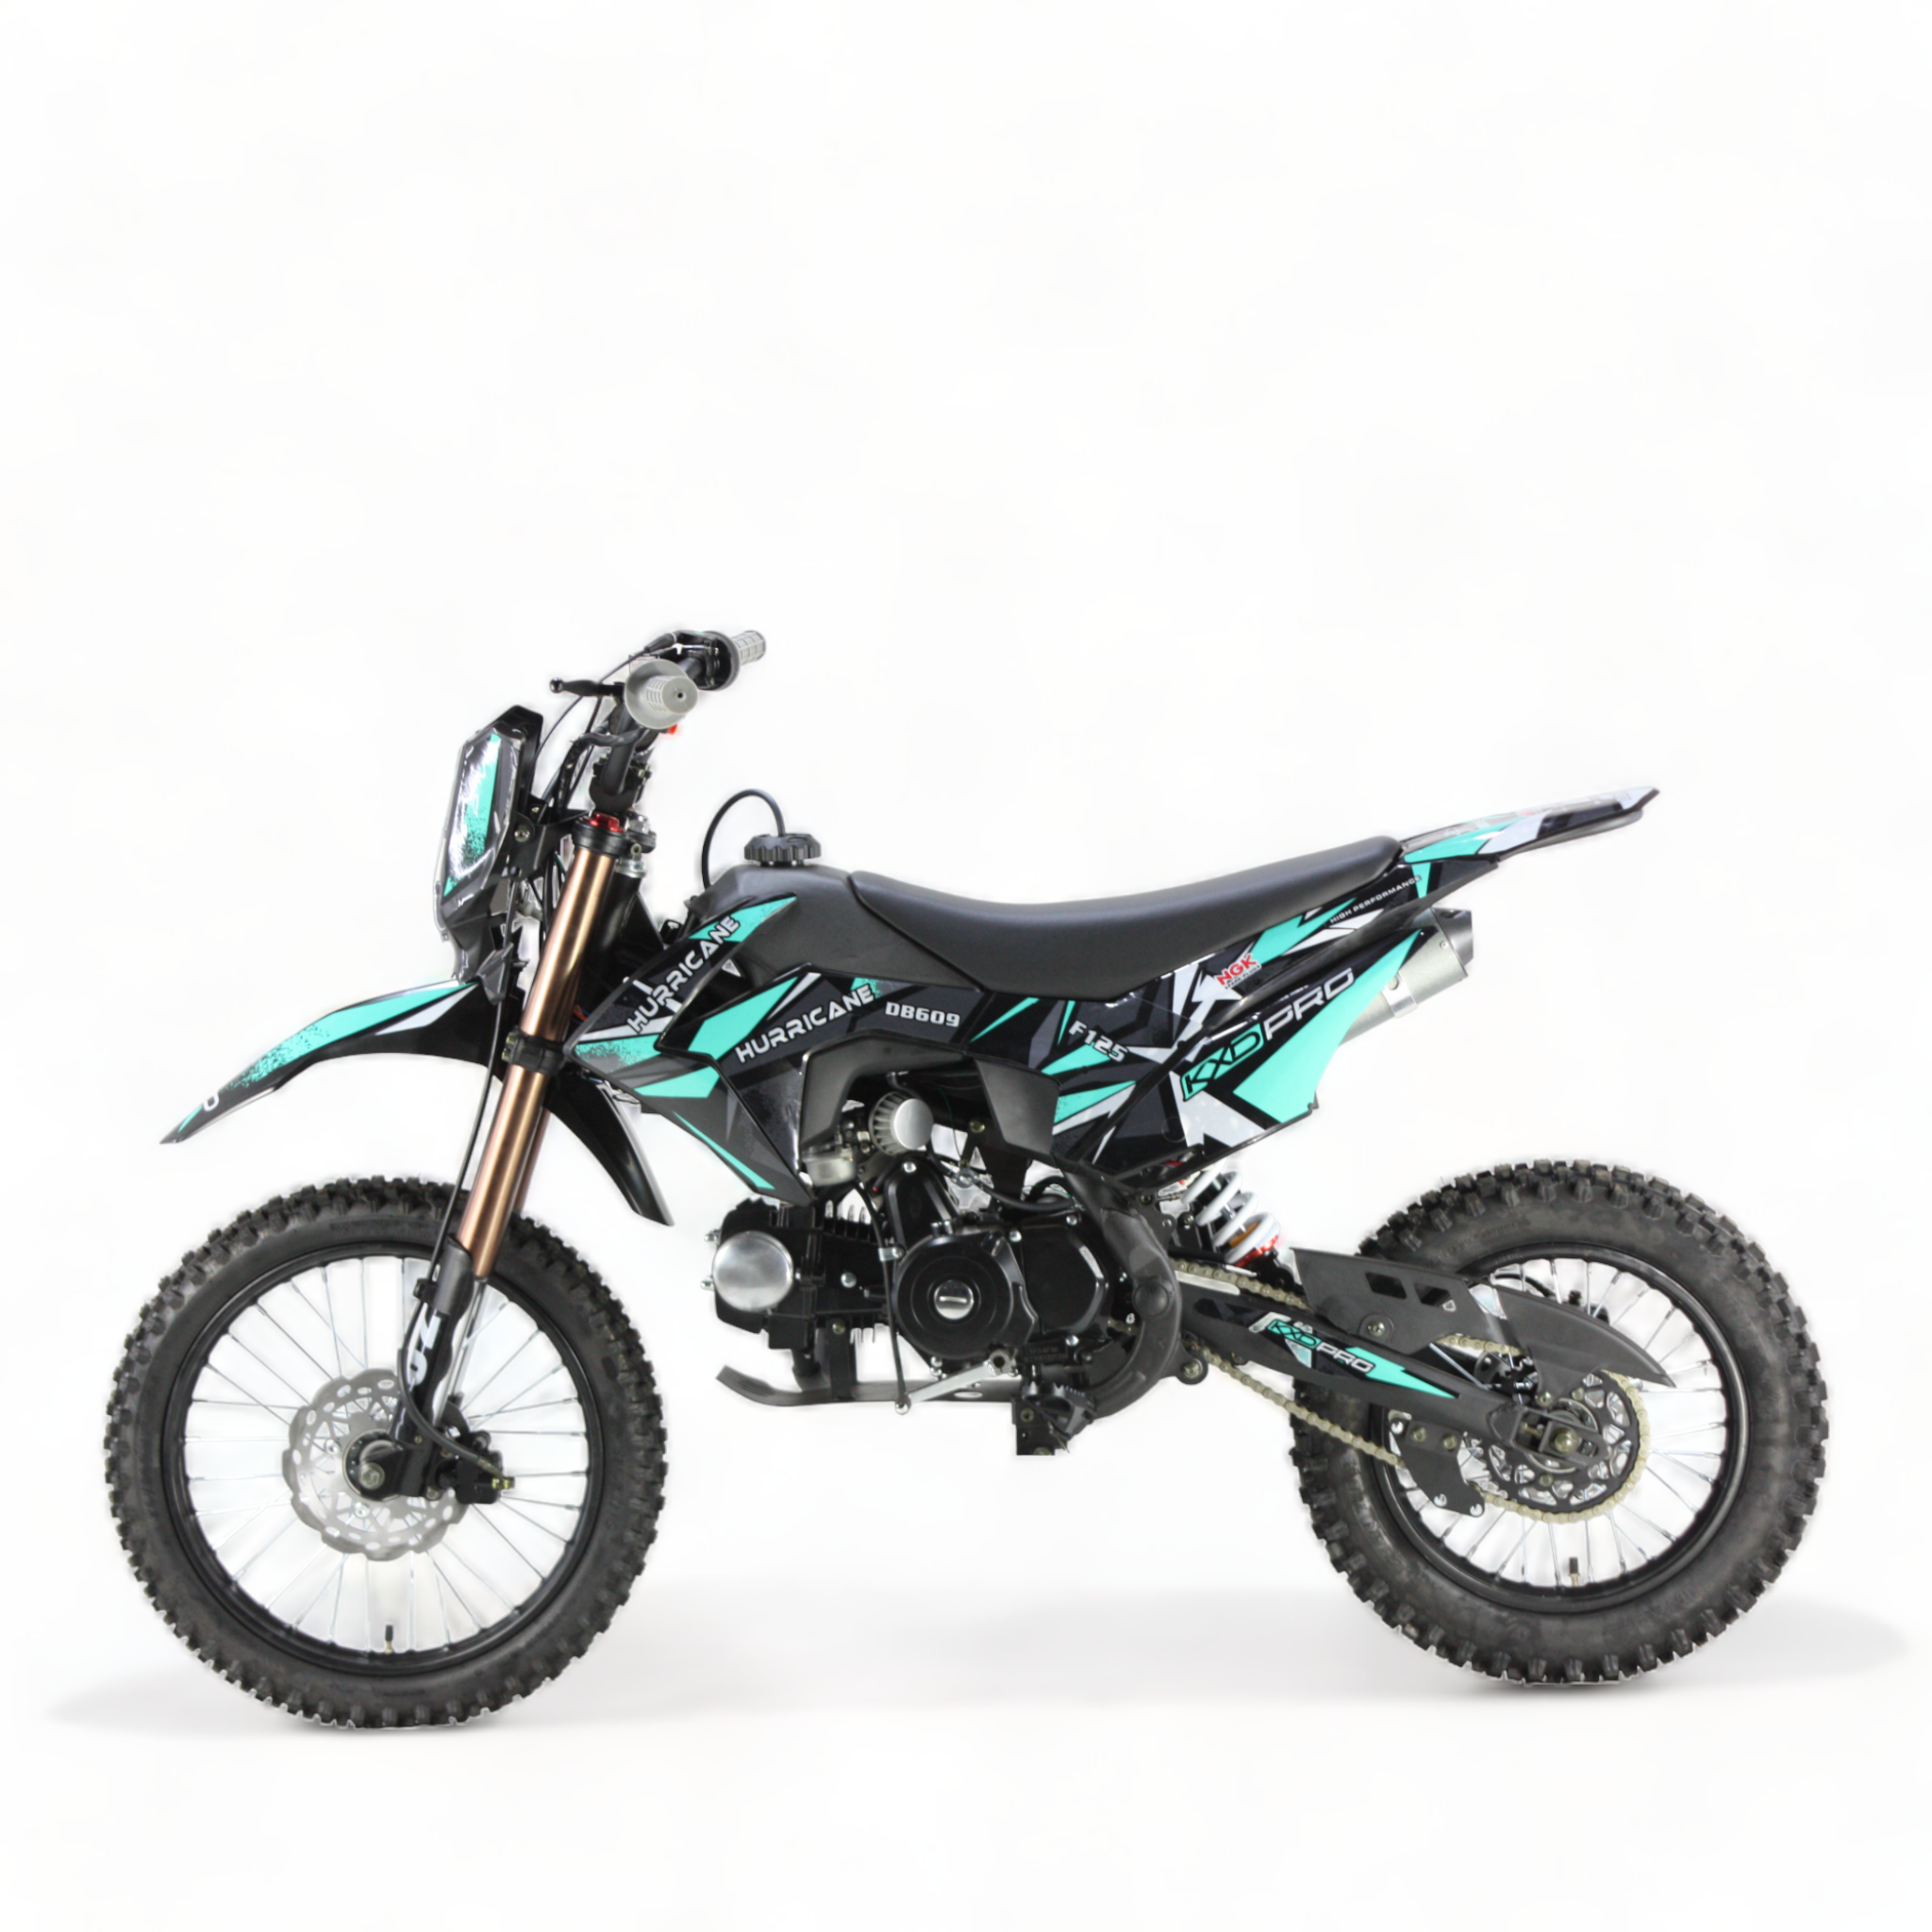 Motocicleta cross copii kxd 125cc, db 609 pro, 4t, roti 17"/14", e+k e-starter, culoare negru/turcoaz cu far